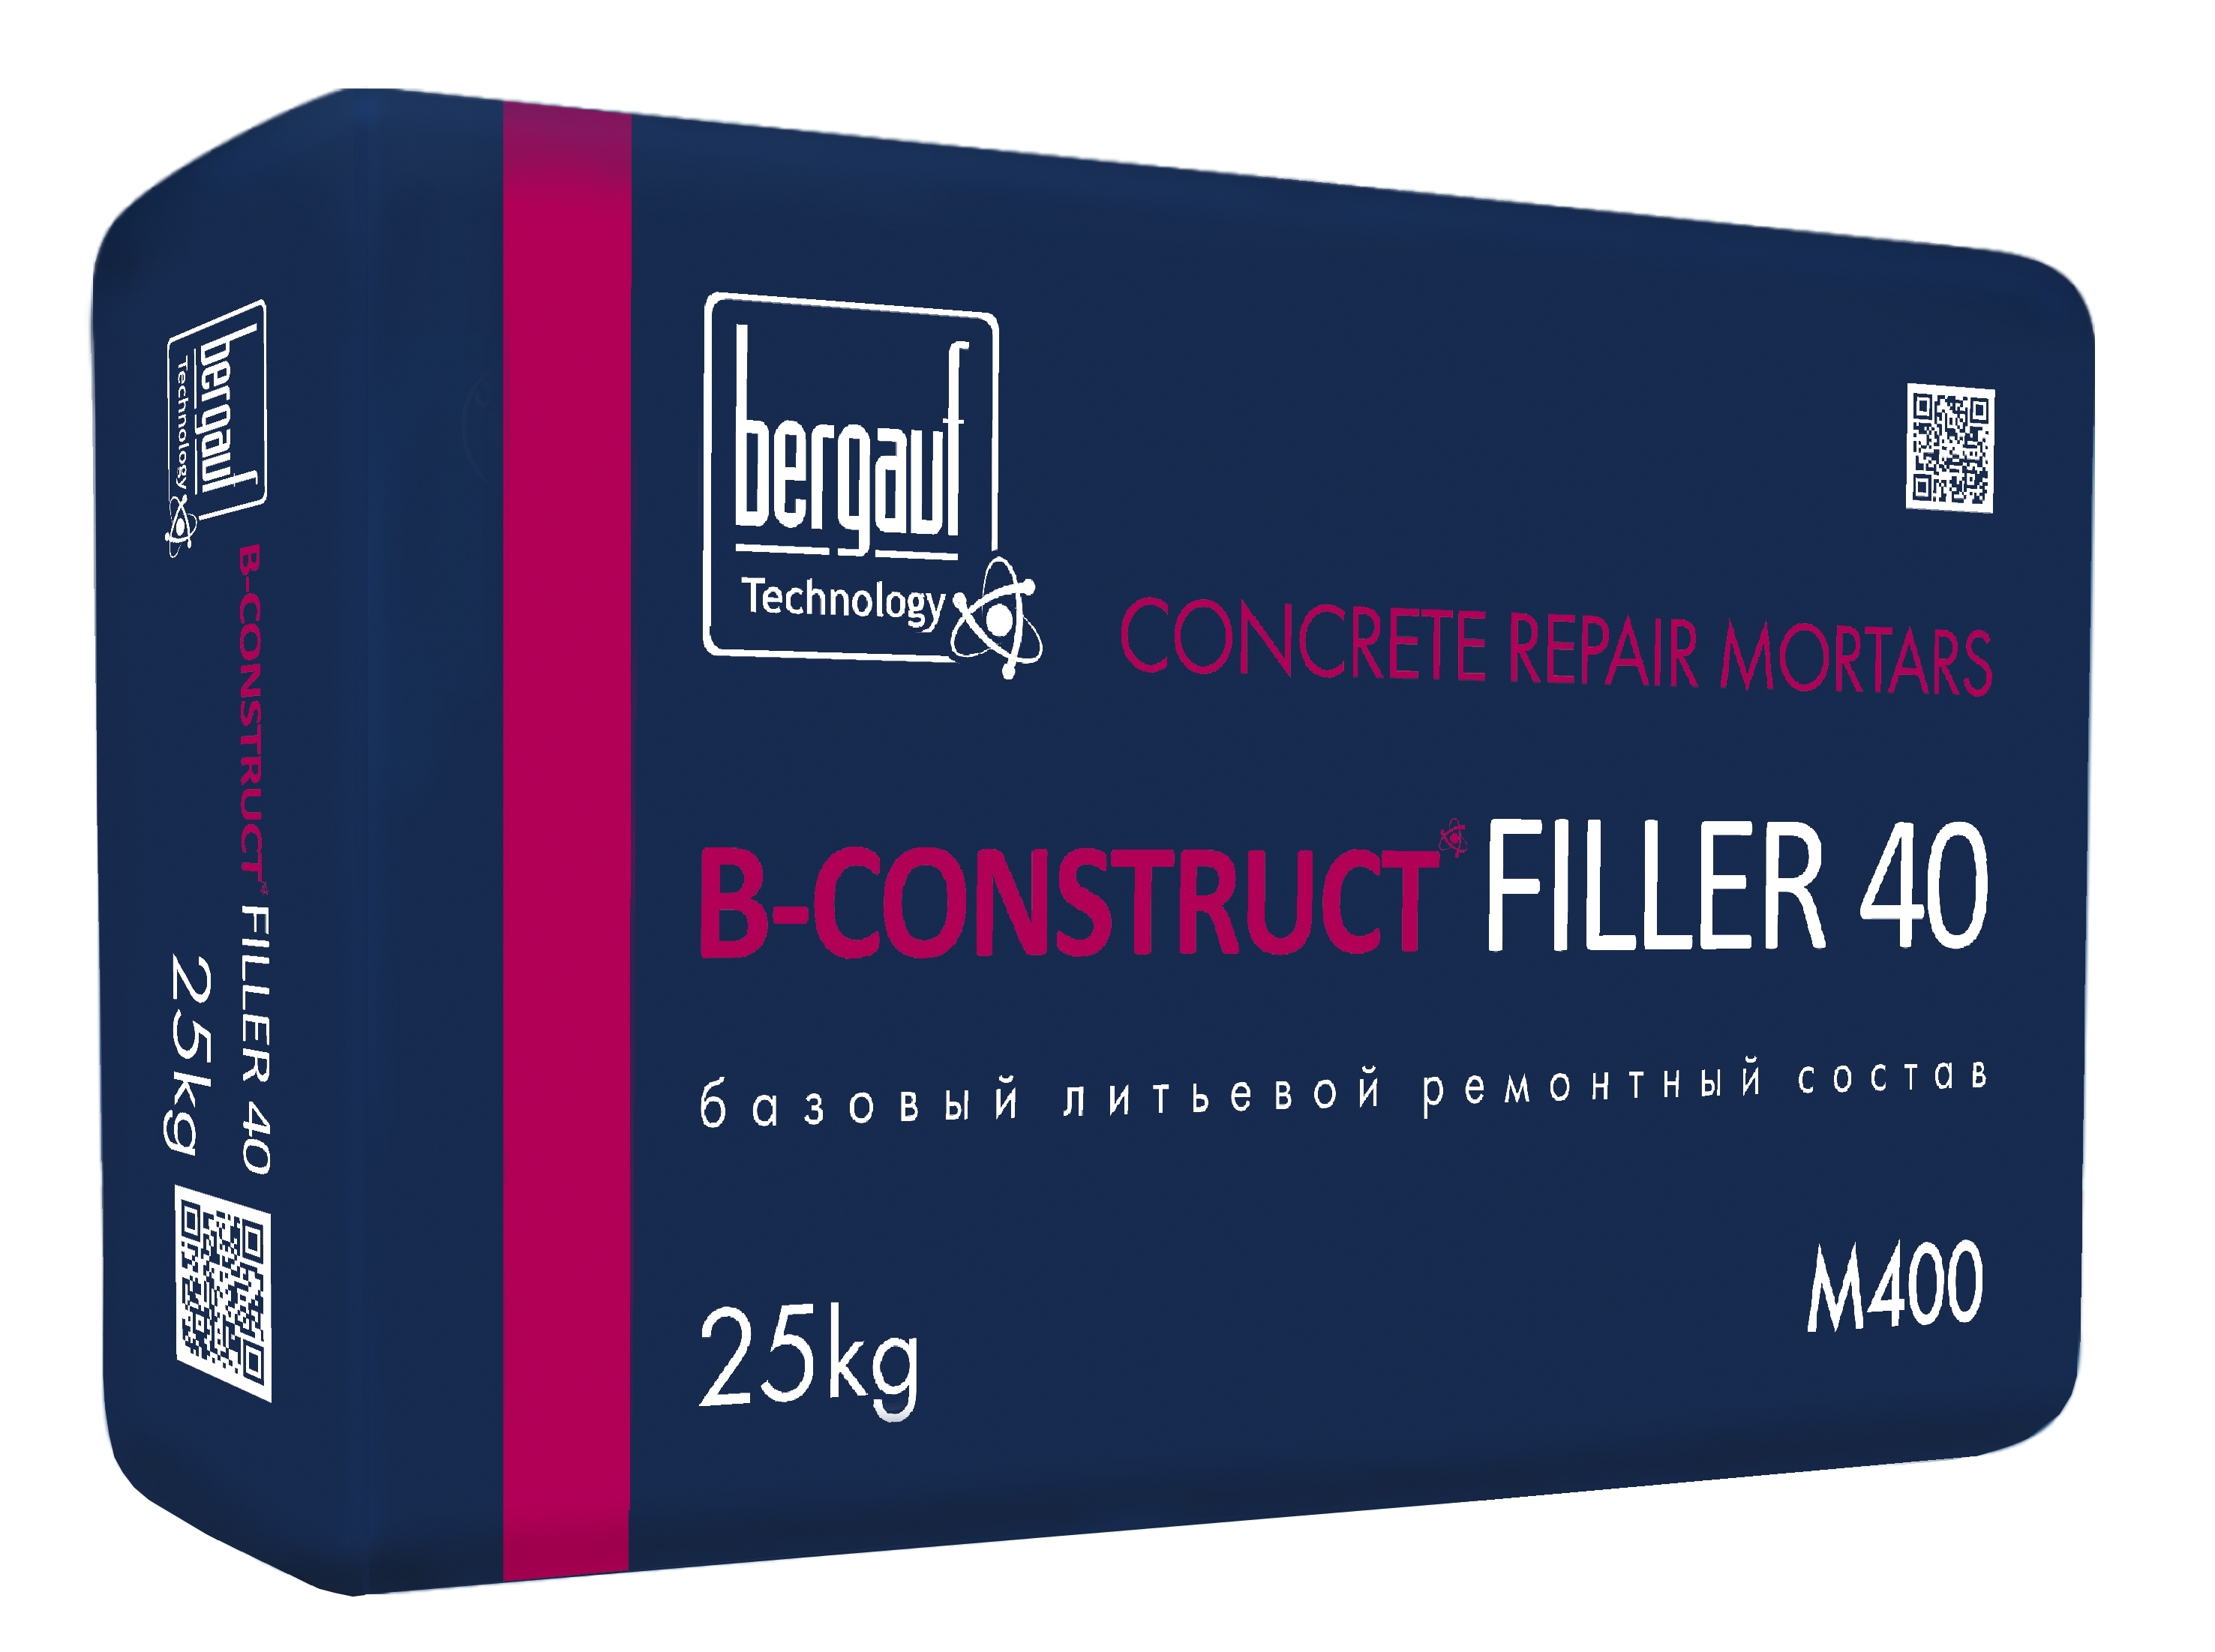 B-Construct FILLER 40